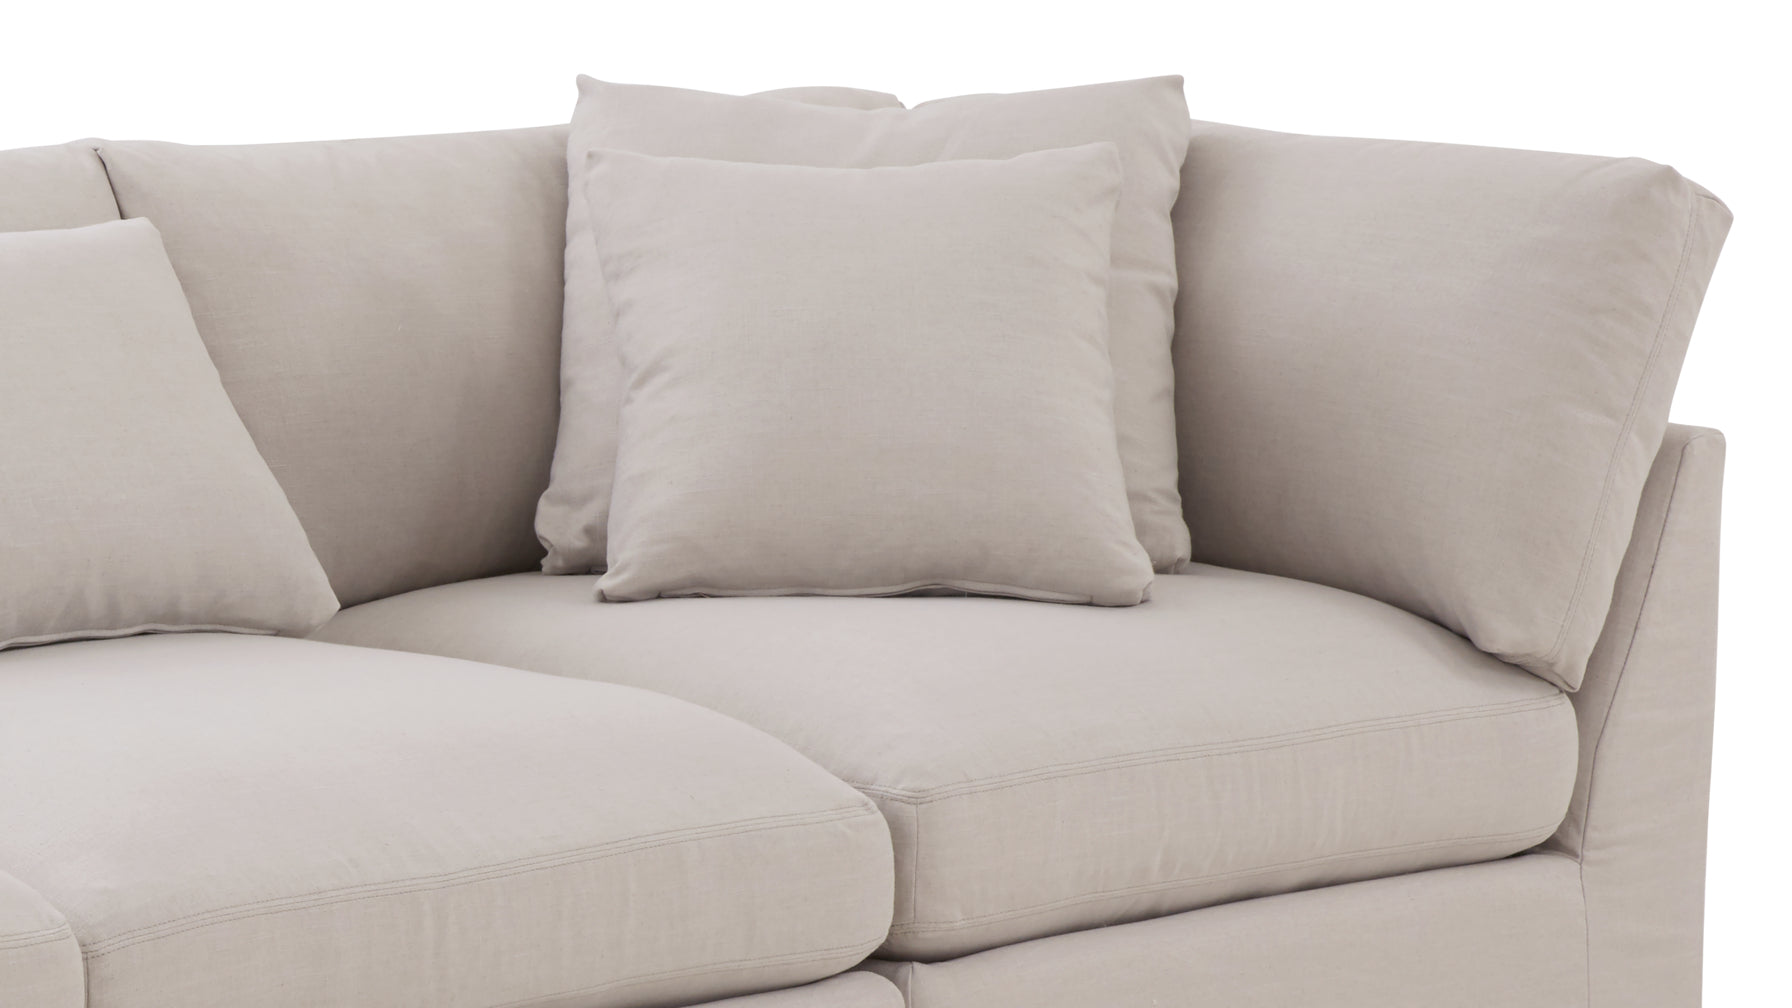 Get Together™ 3-Piece Modular Sofa, Large, Clay - Image 13